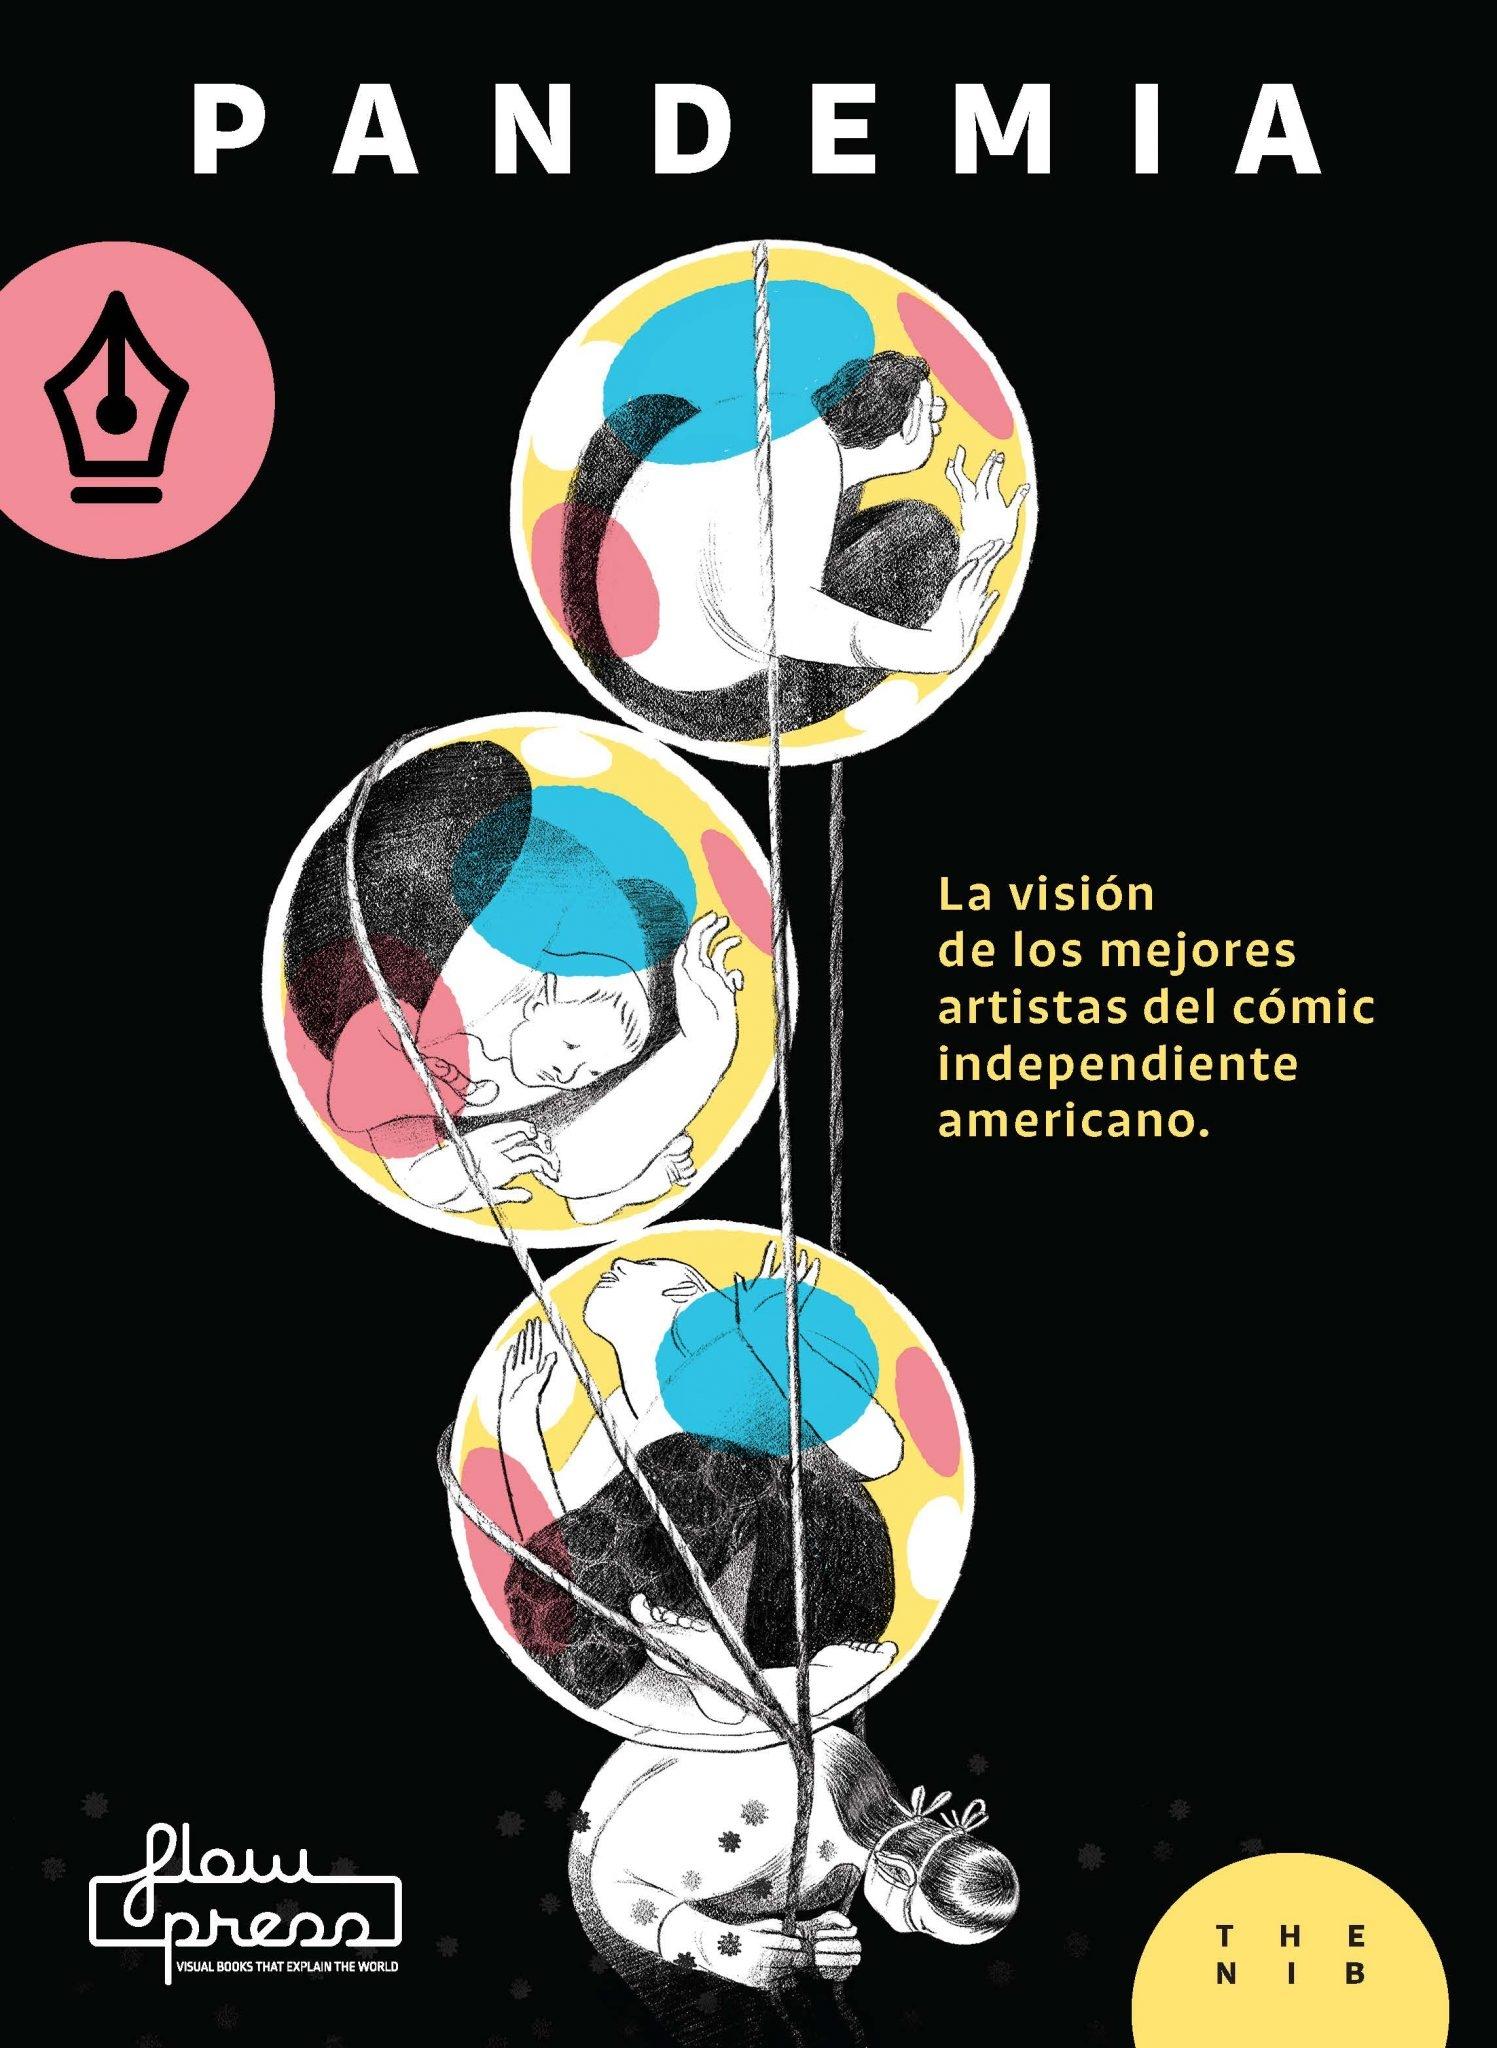 Pandemia "La visión de los mejores artistas del cómic independiente americano". 